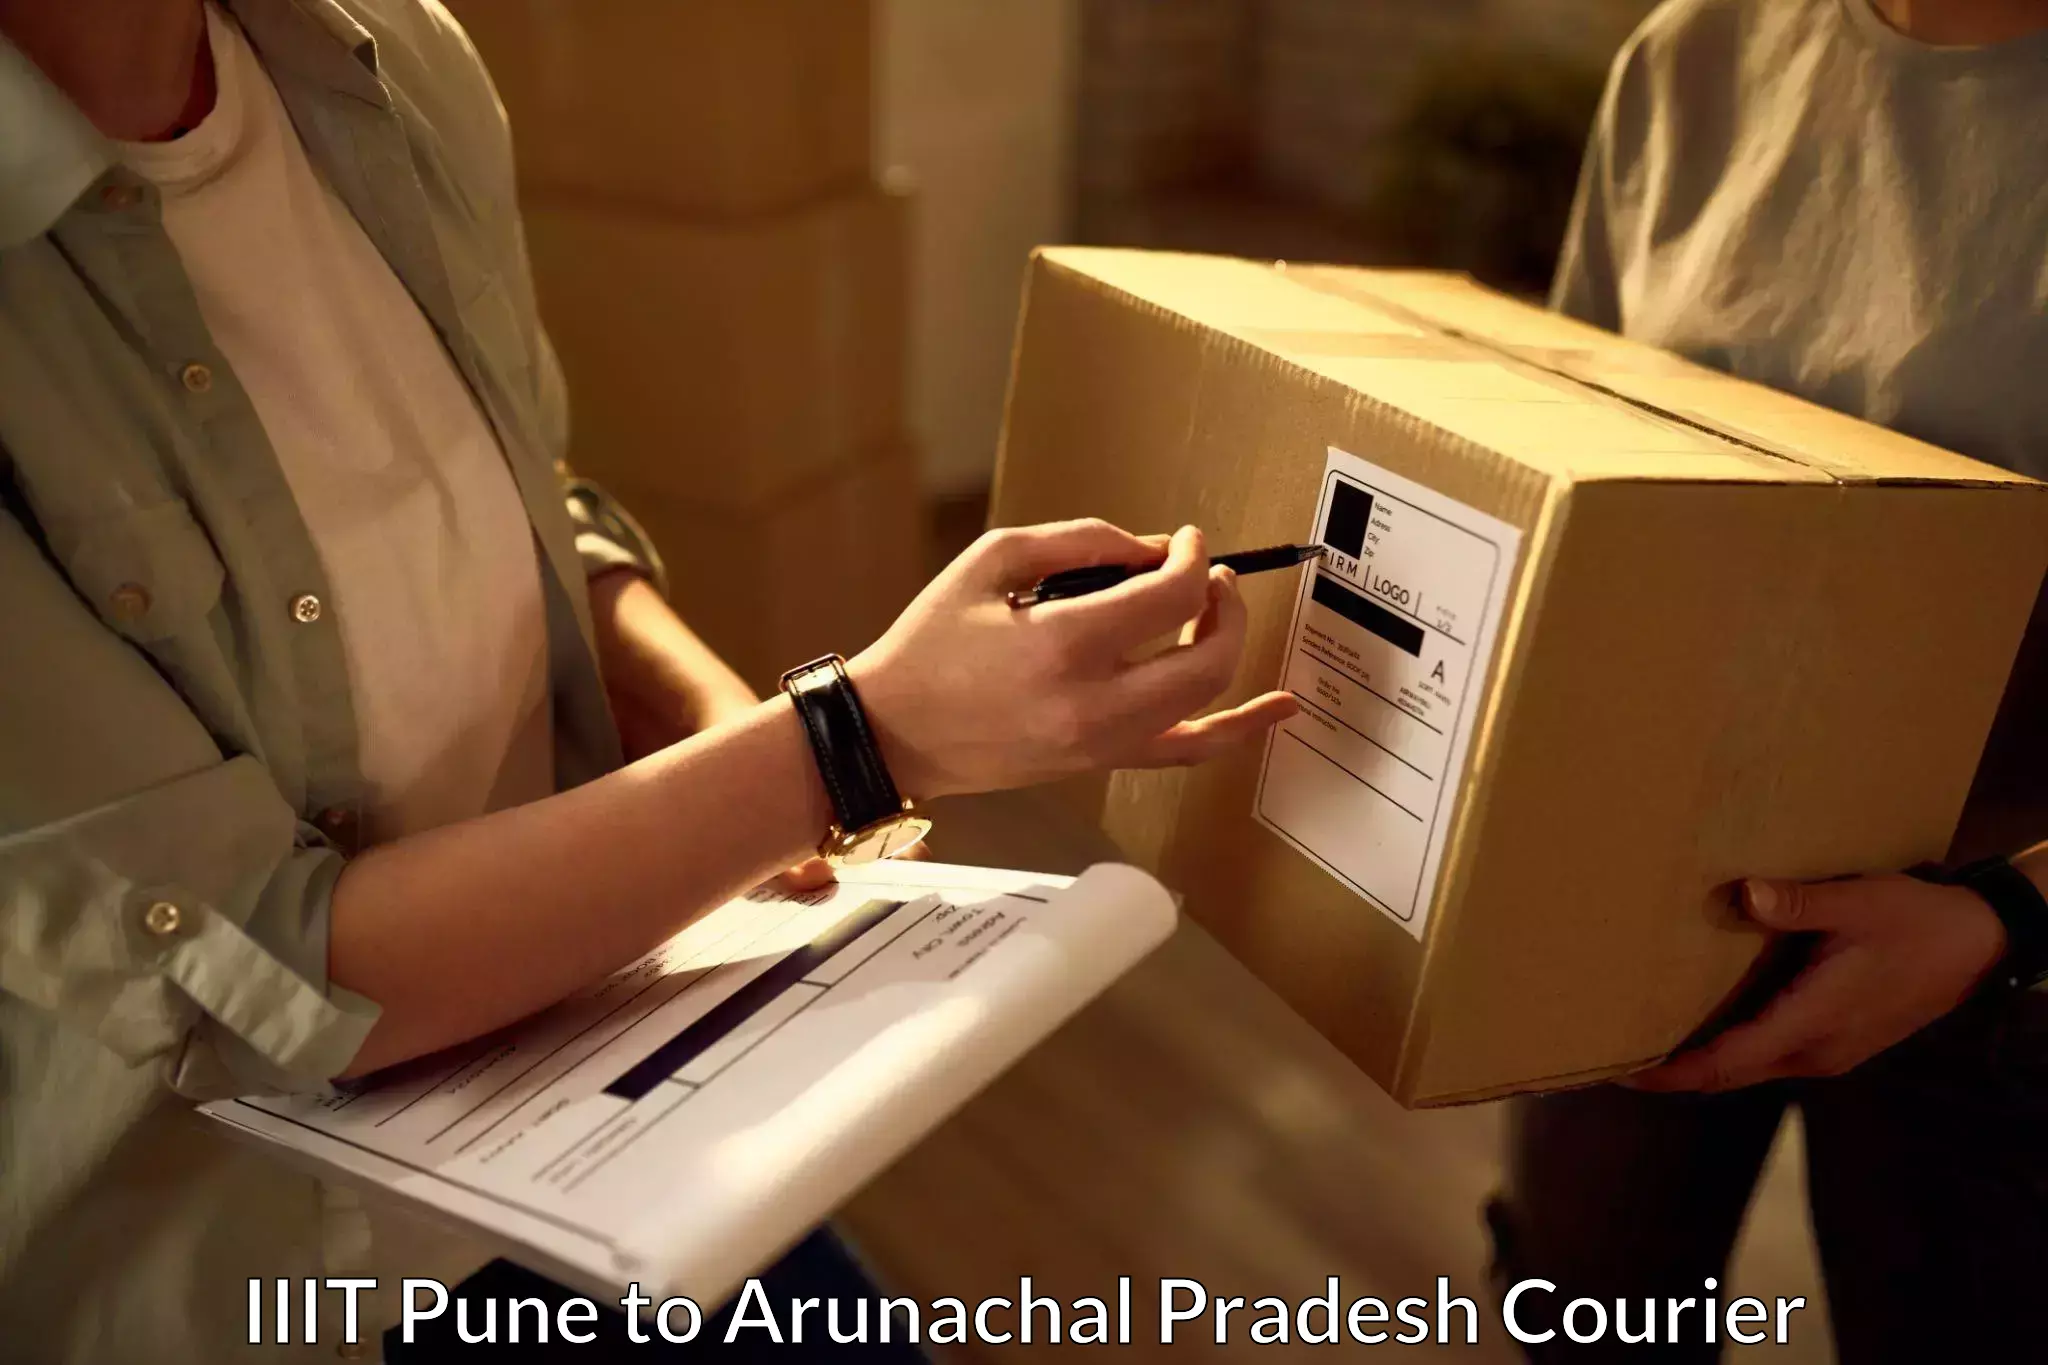 Courier services IIIT Pune to Arunachal Pradesh